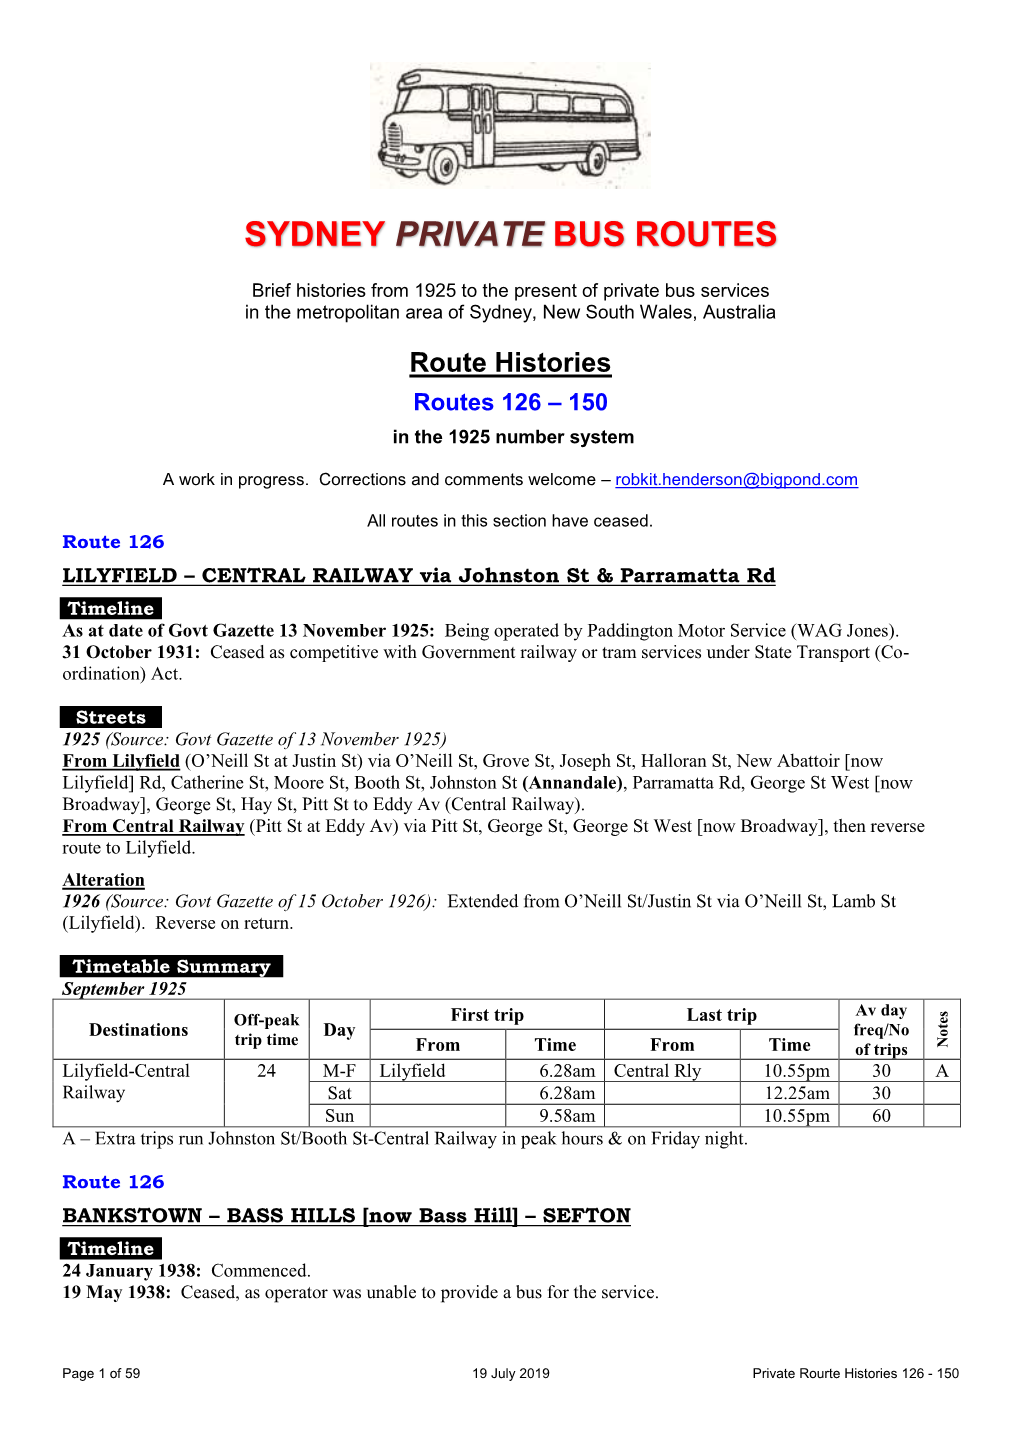 Sydney Private Bus Routes 126-150